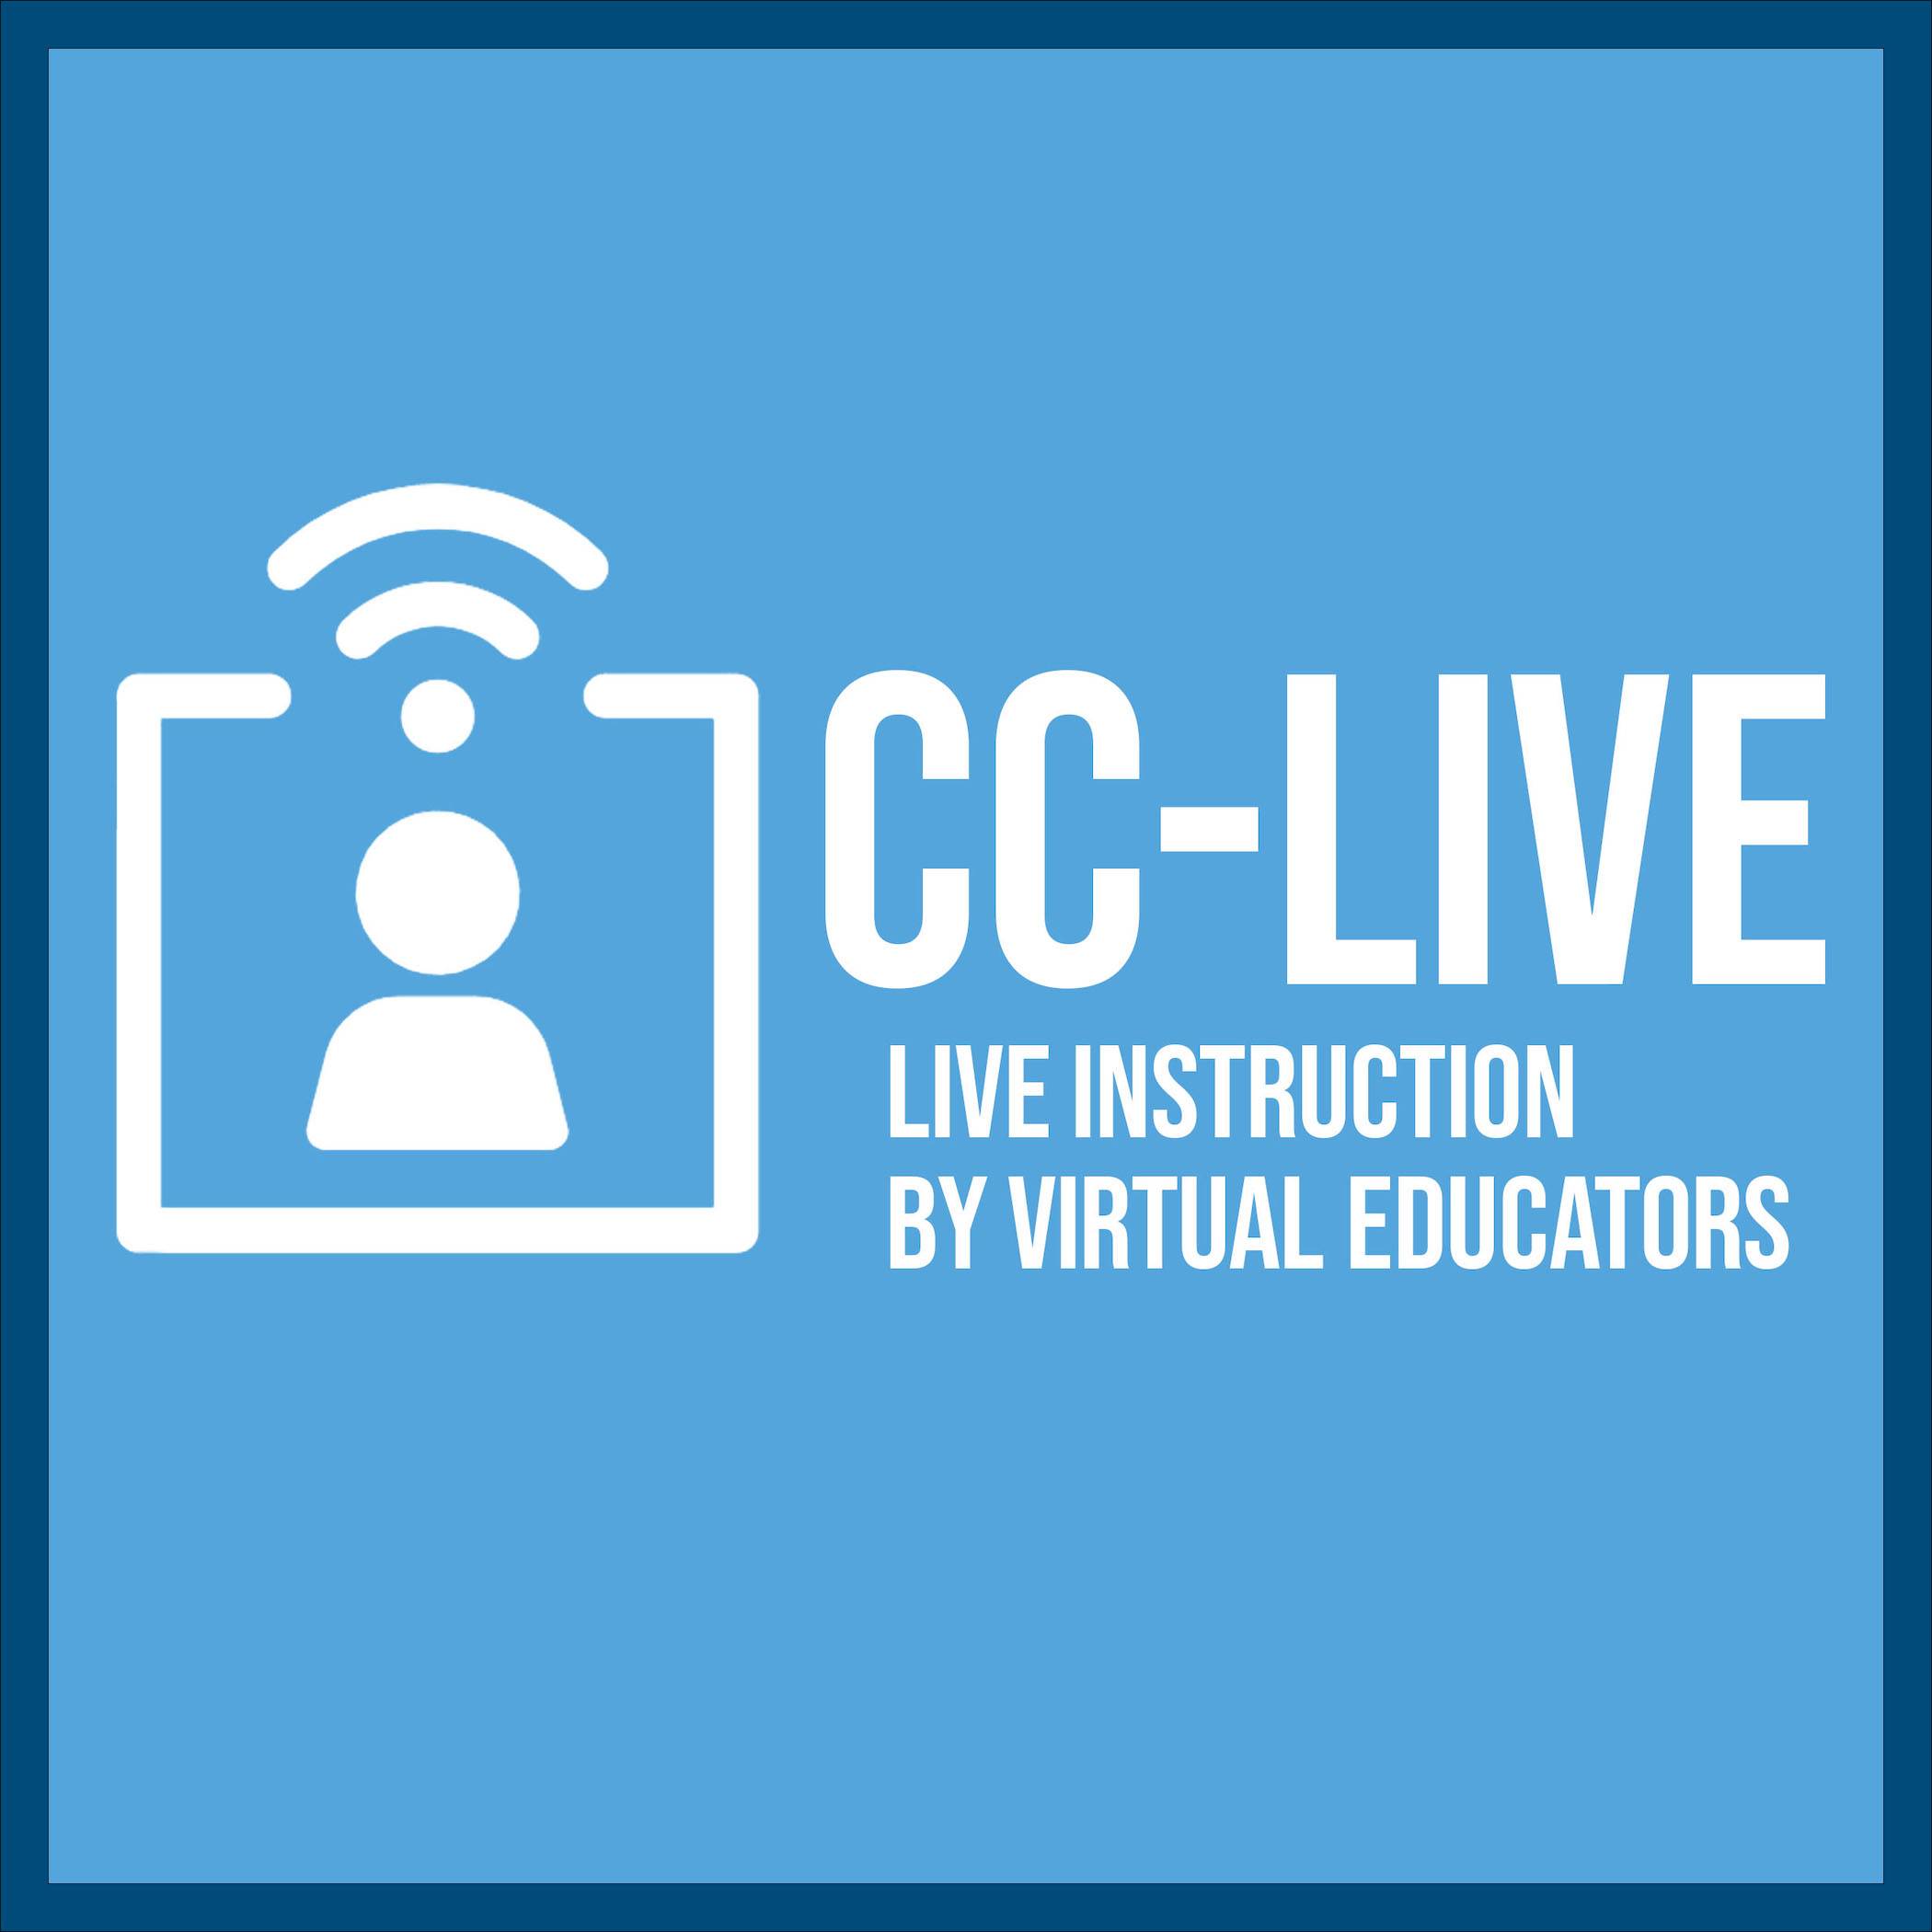 cc live logo